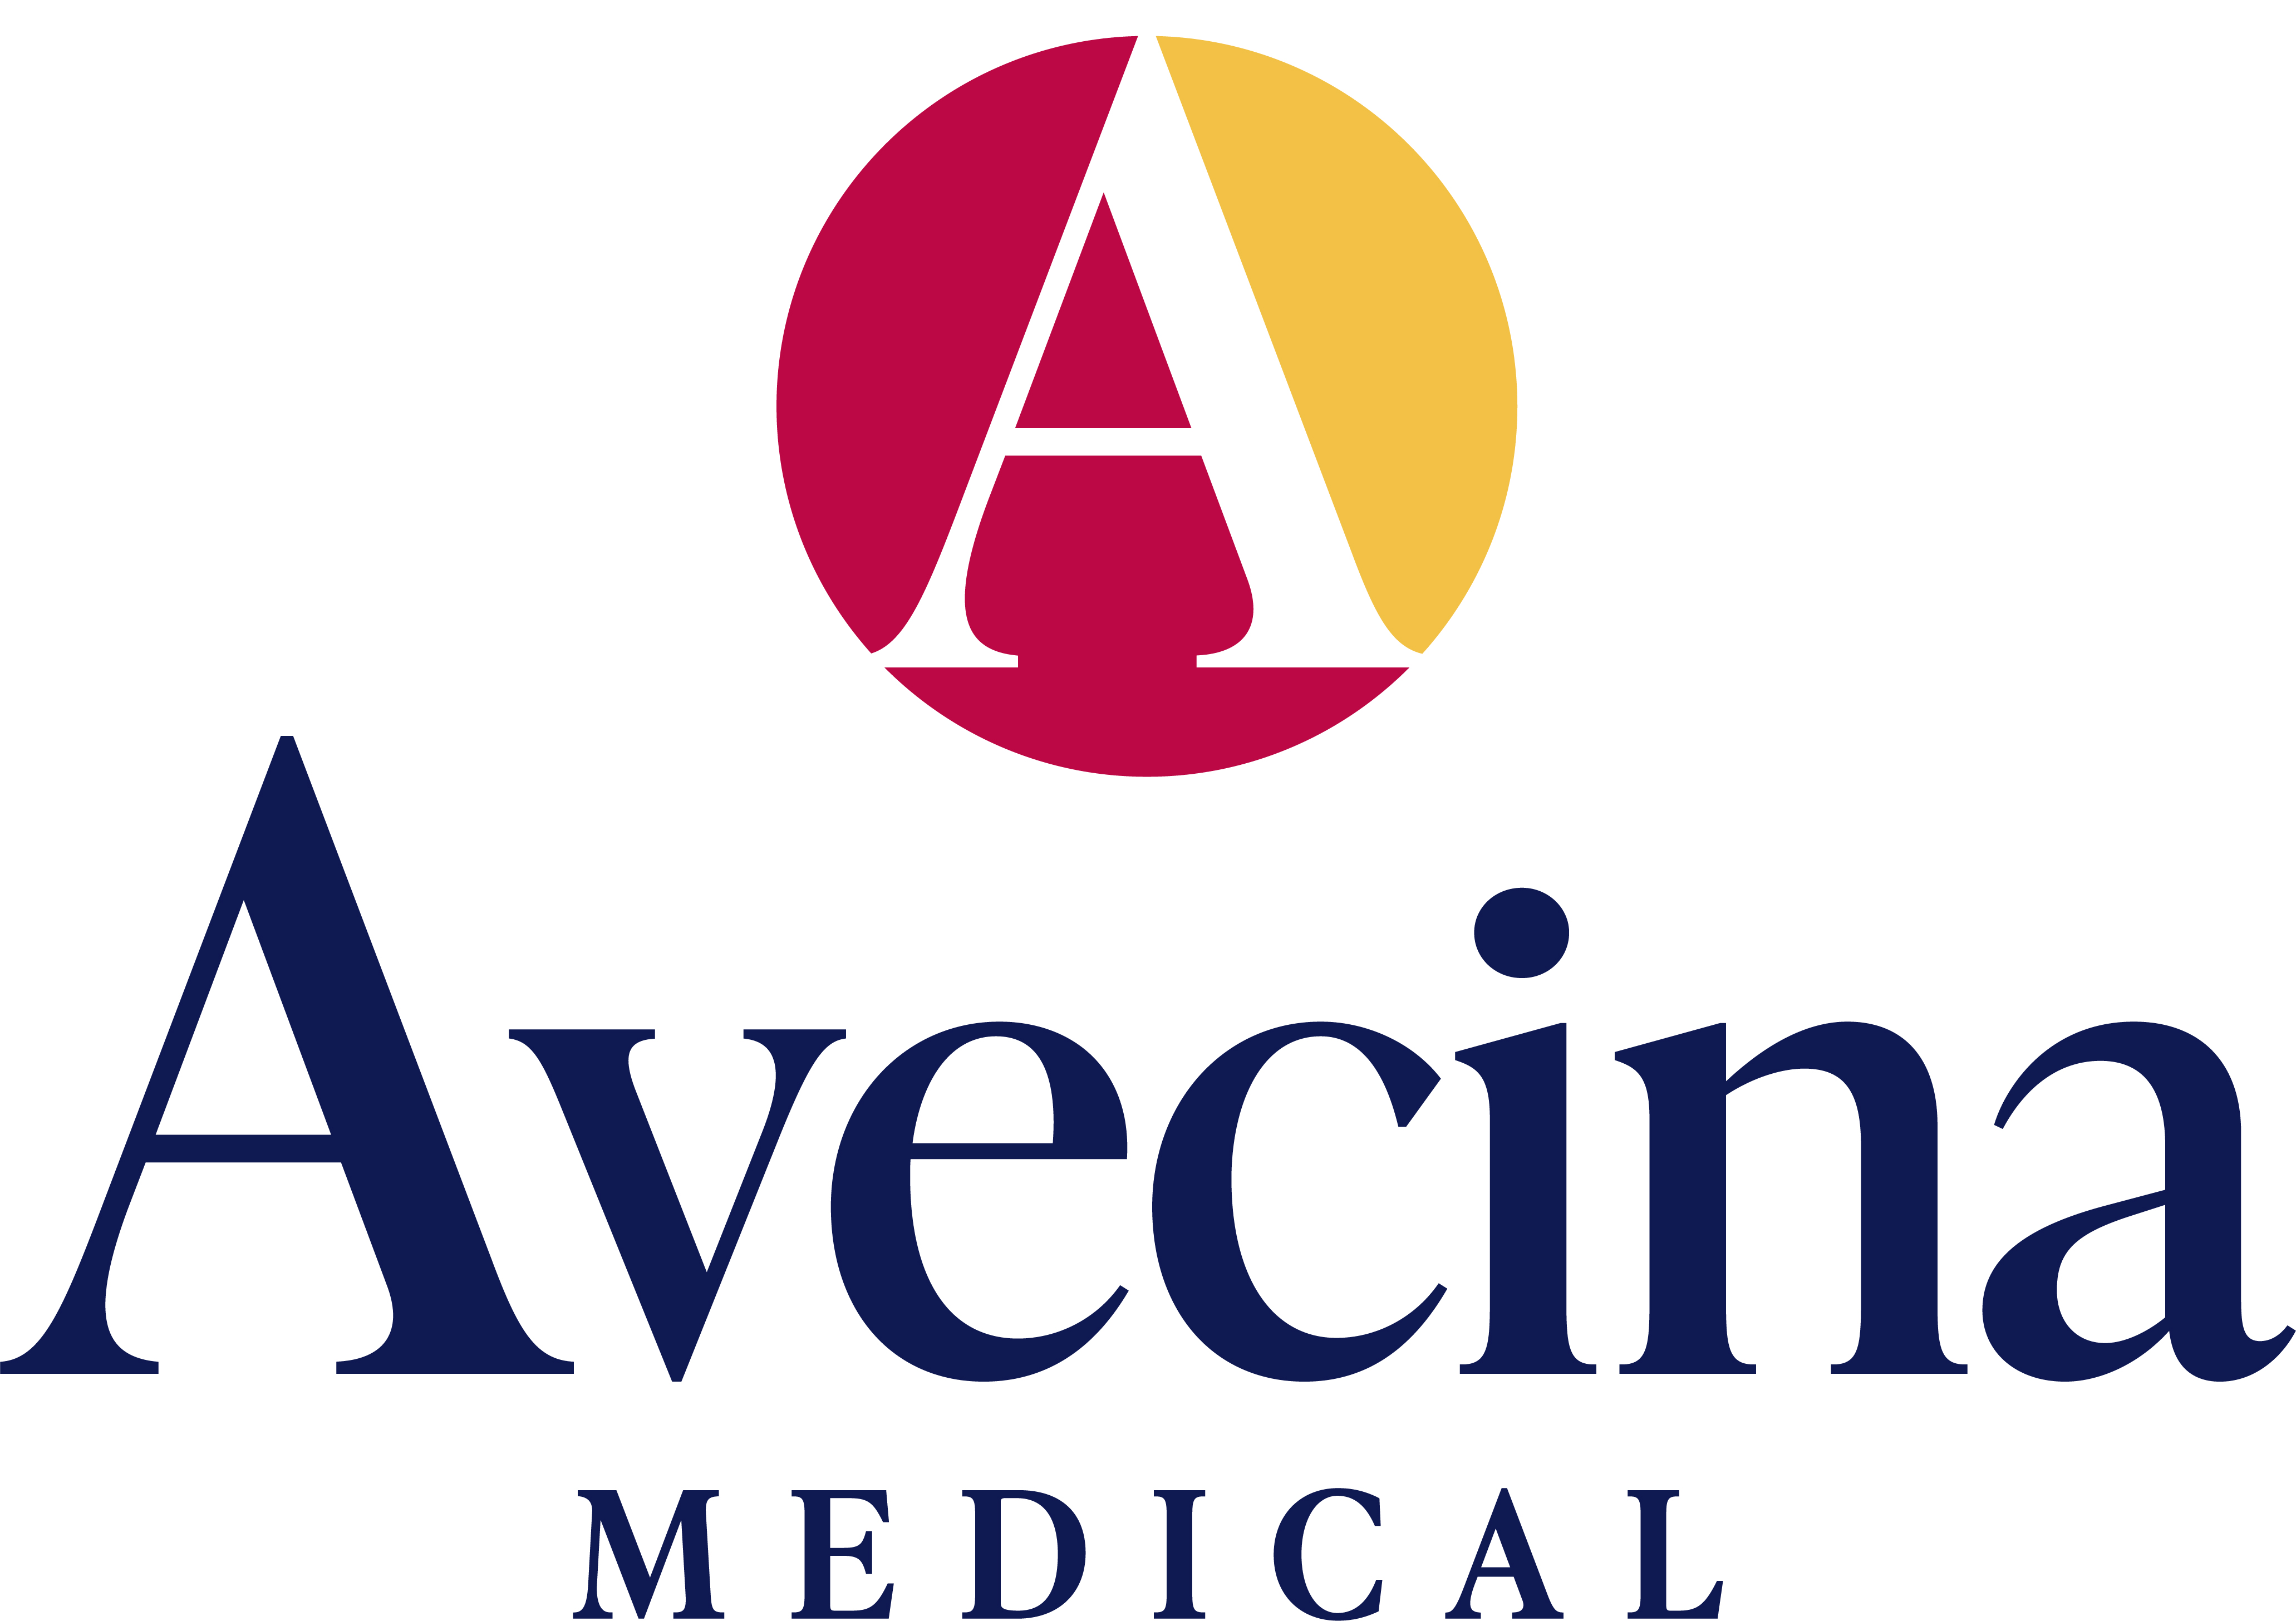 Avecina Medical - St. Augustine Logo